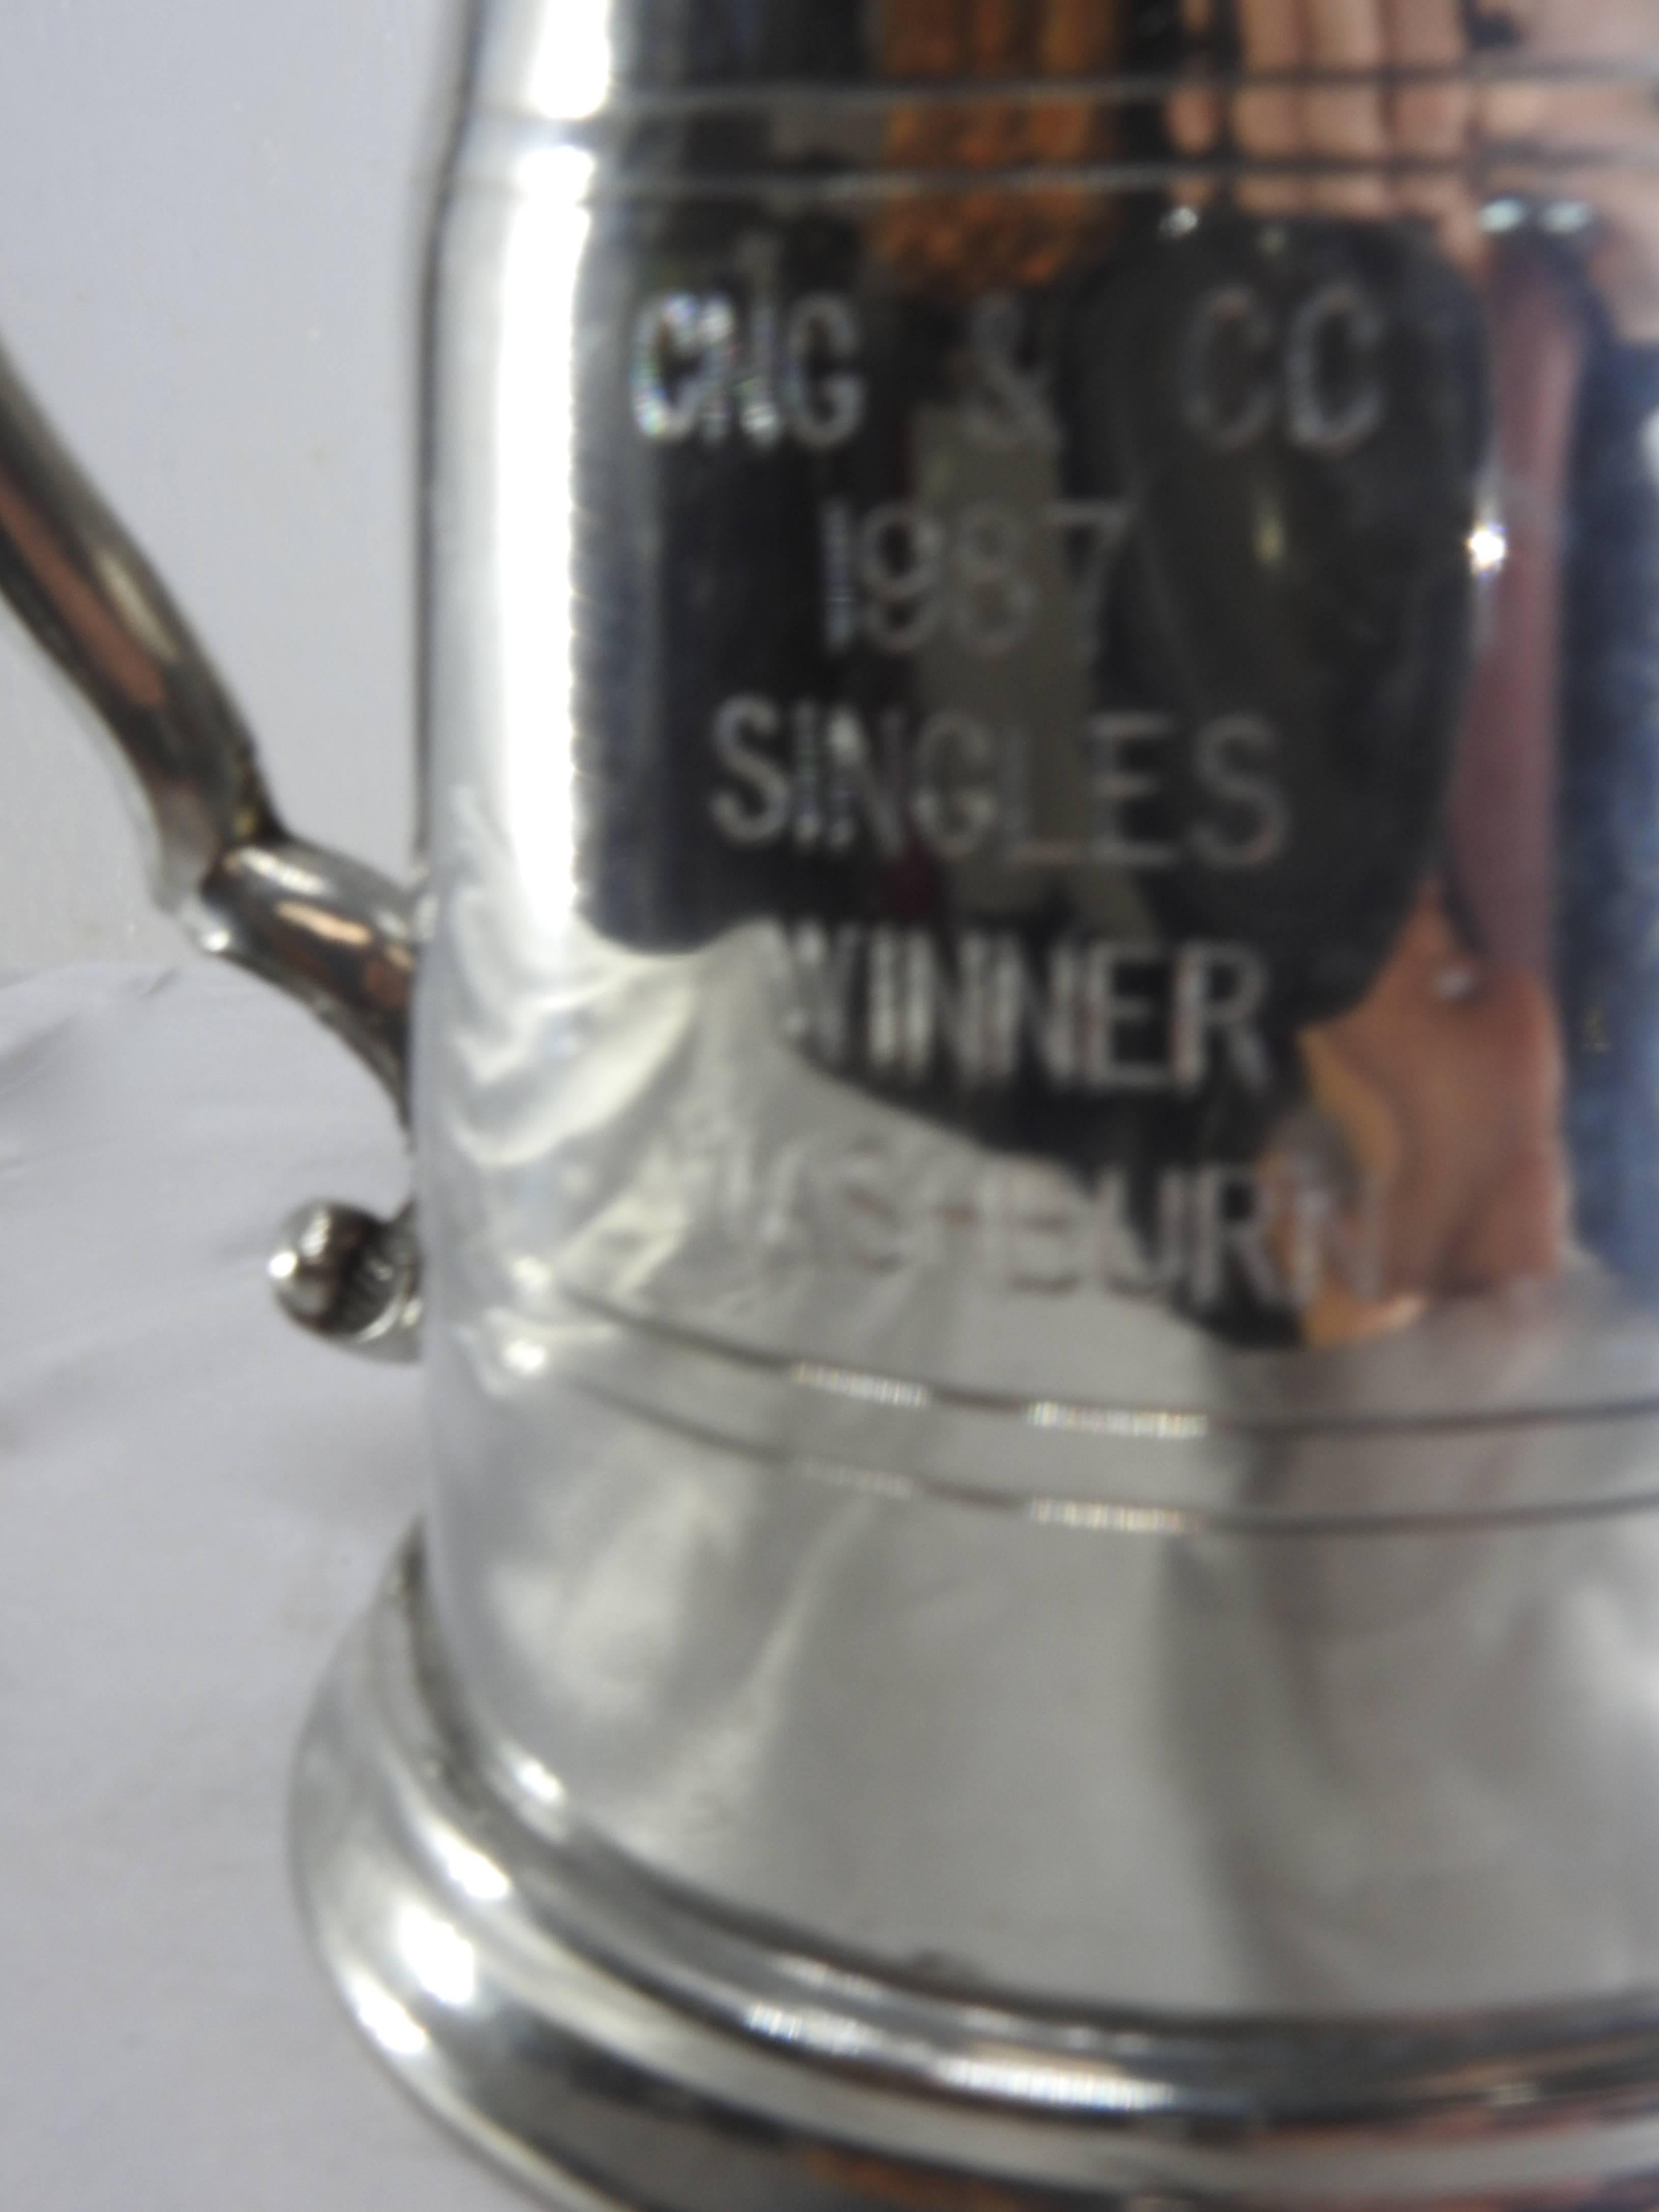 Dieser Sheffield-Krug wird durch einen seitlichen Henkel mit Schnörkeln akzentuiert. Der Krug selbst hat geschwungene Linien, die seine Schönheit noch verstärken. Er ist mit der Gravur CNG & Co. 1987, Singles Winner, Washburn versehen. Der Krug